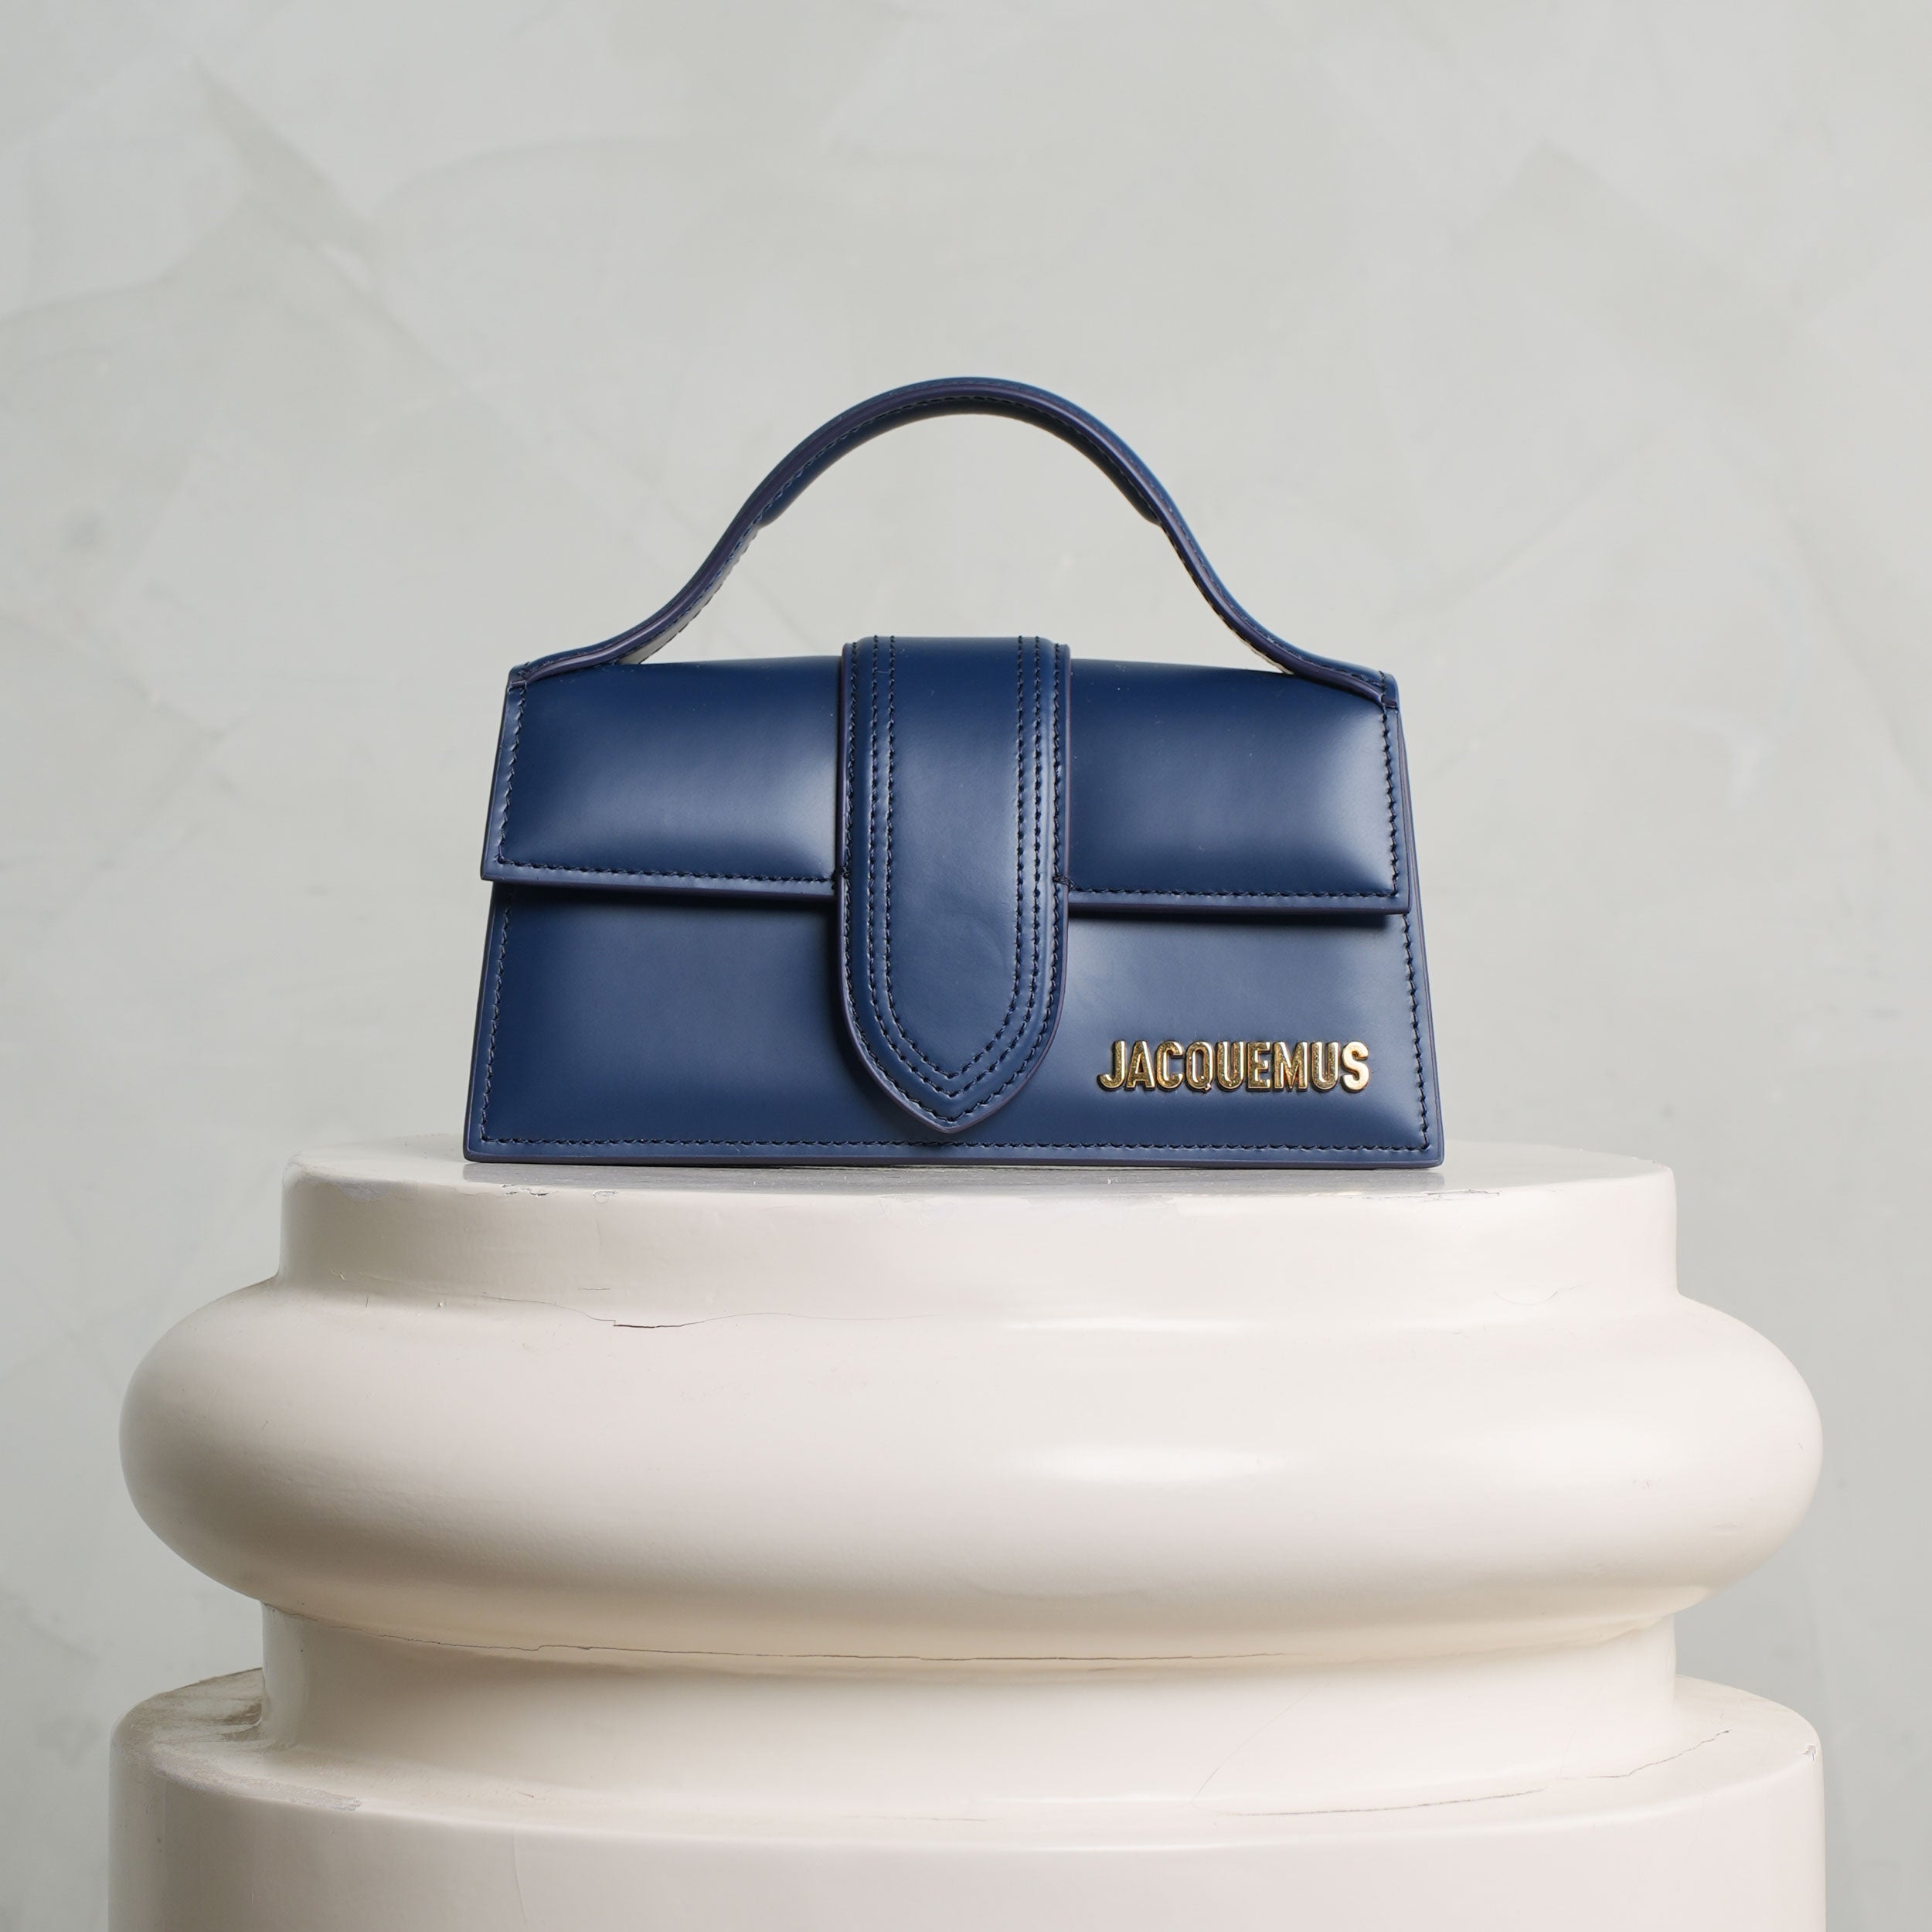 Designer Bags: Buy Women's Luxury Handbags Online